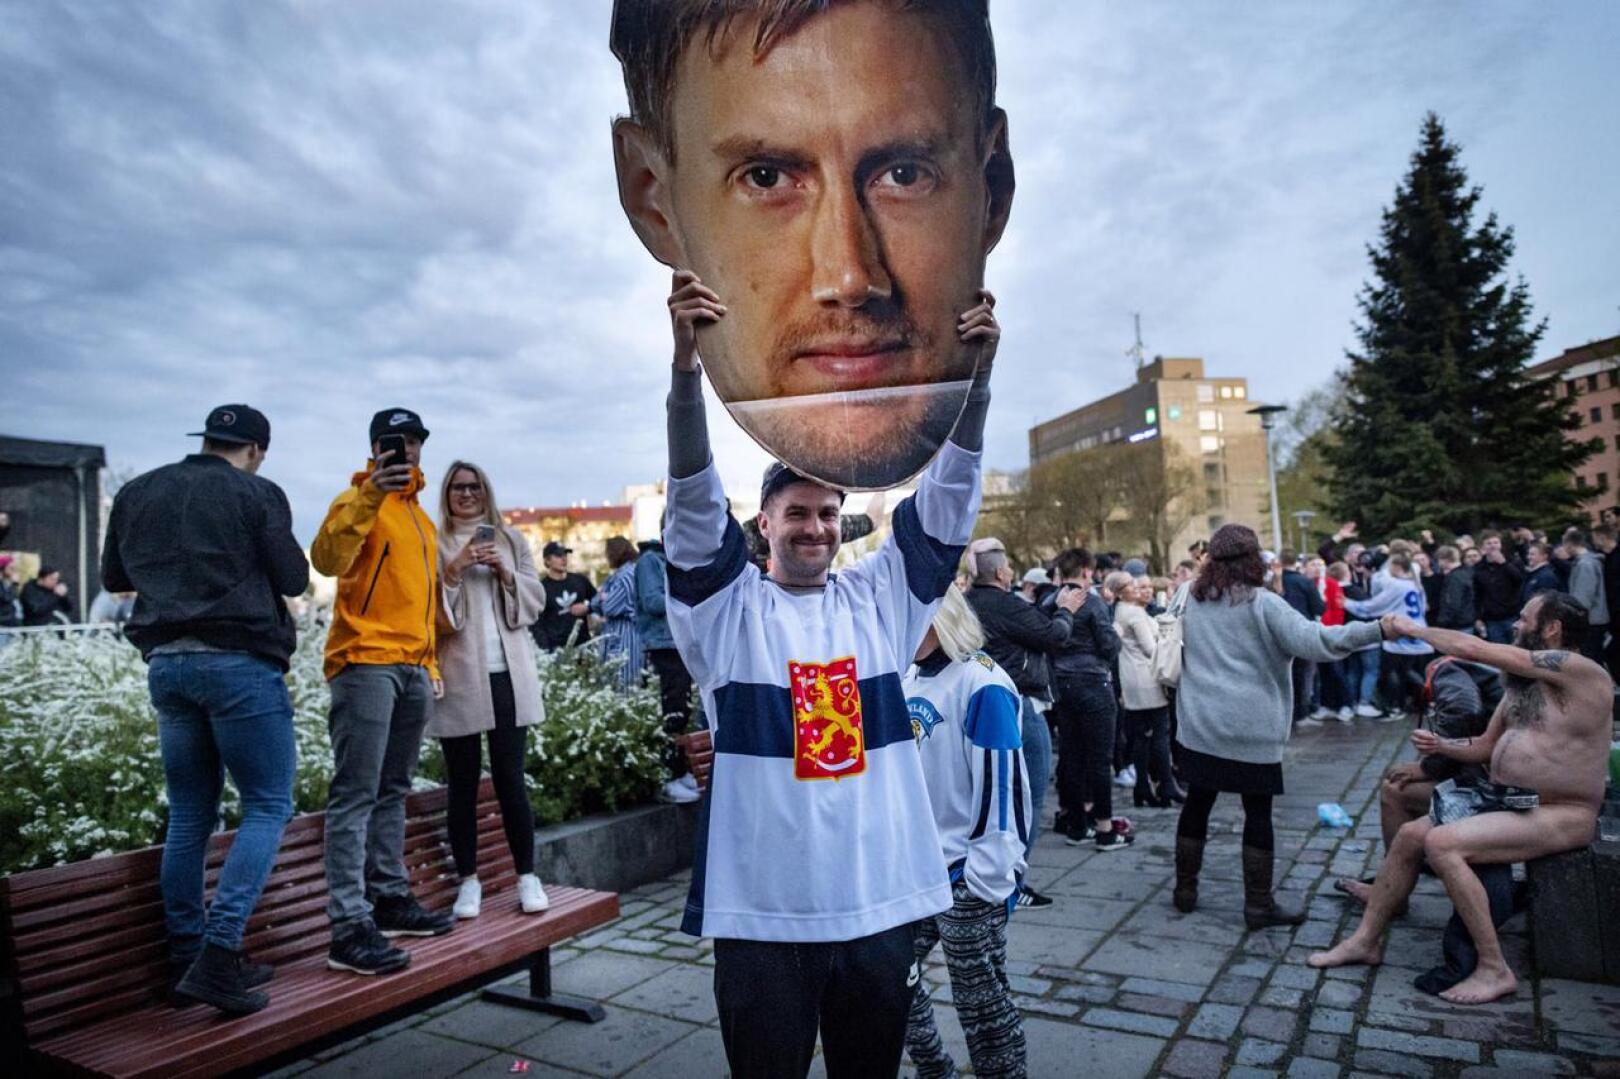 Jääkiekon maailmanmestaruutta juhlittiin vauhdikkaasti toukokuun lopulla. Leijona-kapteeni Marko "Mörkö" Anttila oli pääroolissa myös Kokkolan torilla.